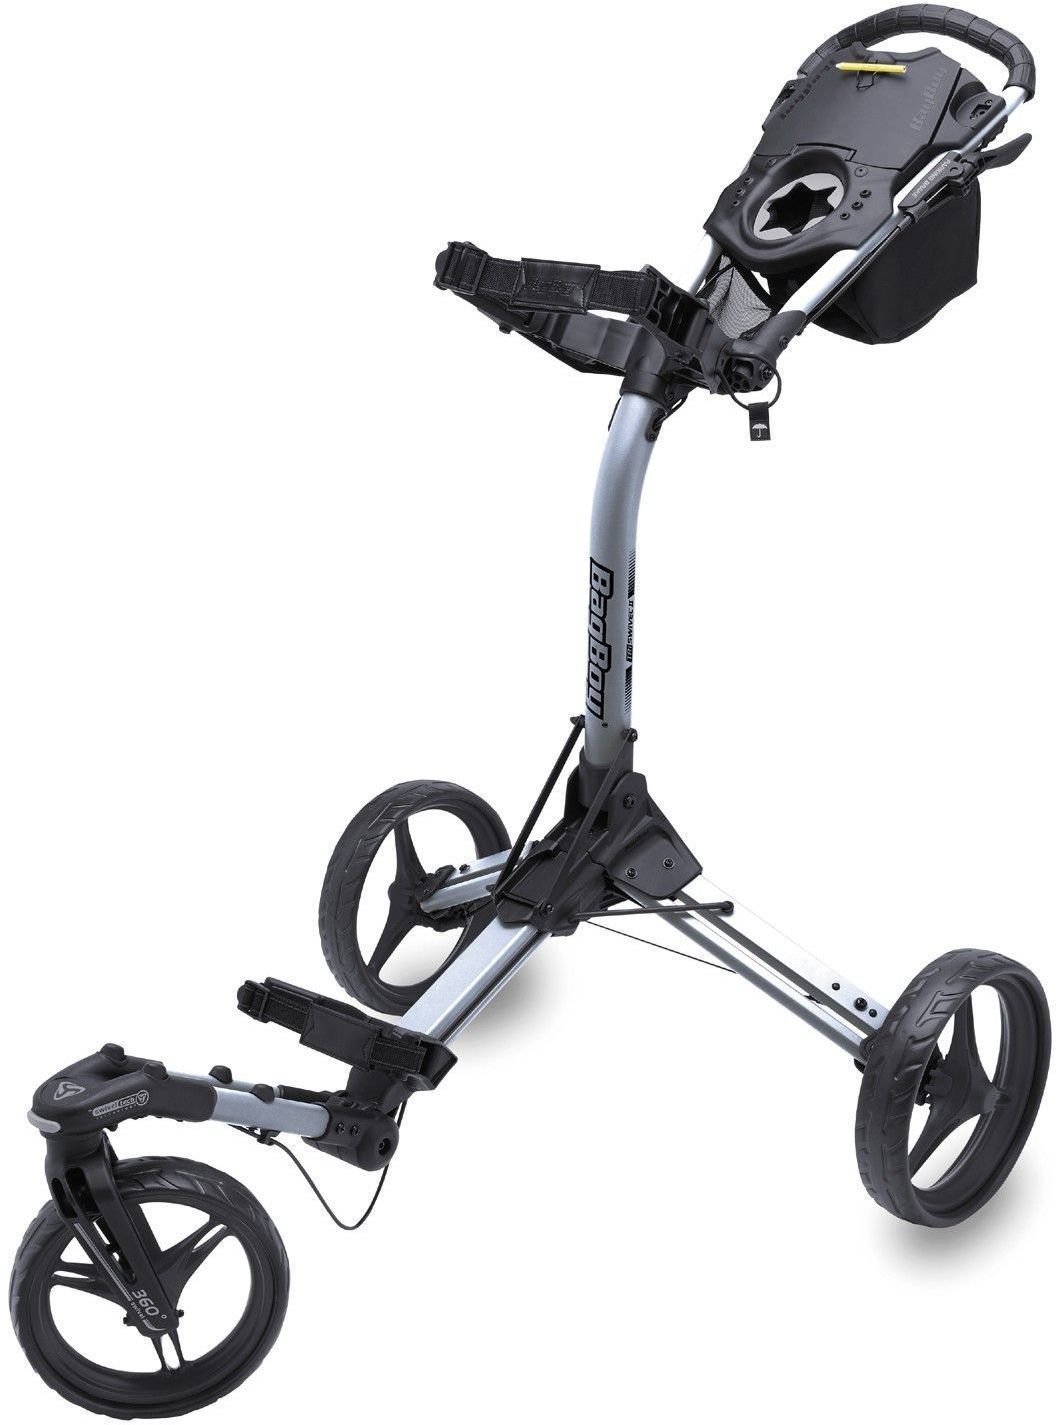 Manuálny golfový vozík BagBoy Tri Swivel 2.0 Silver/Black Golf Trolley